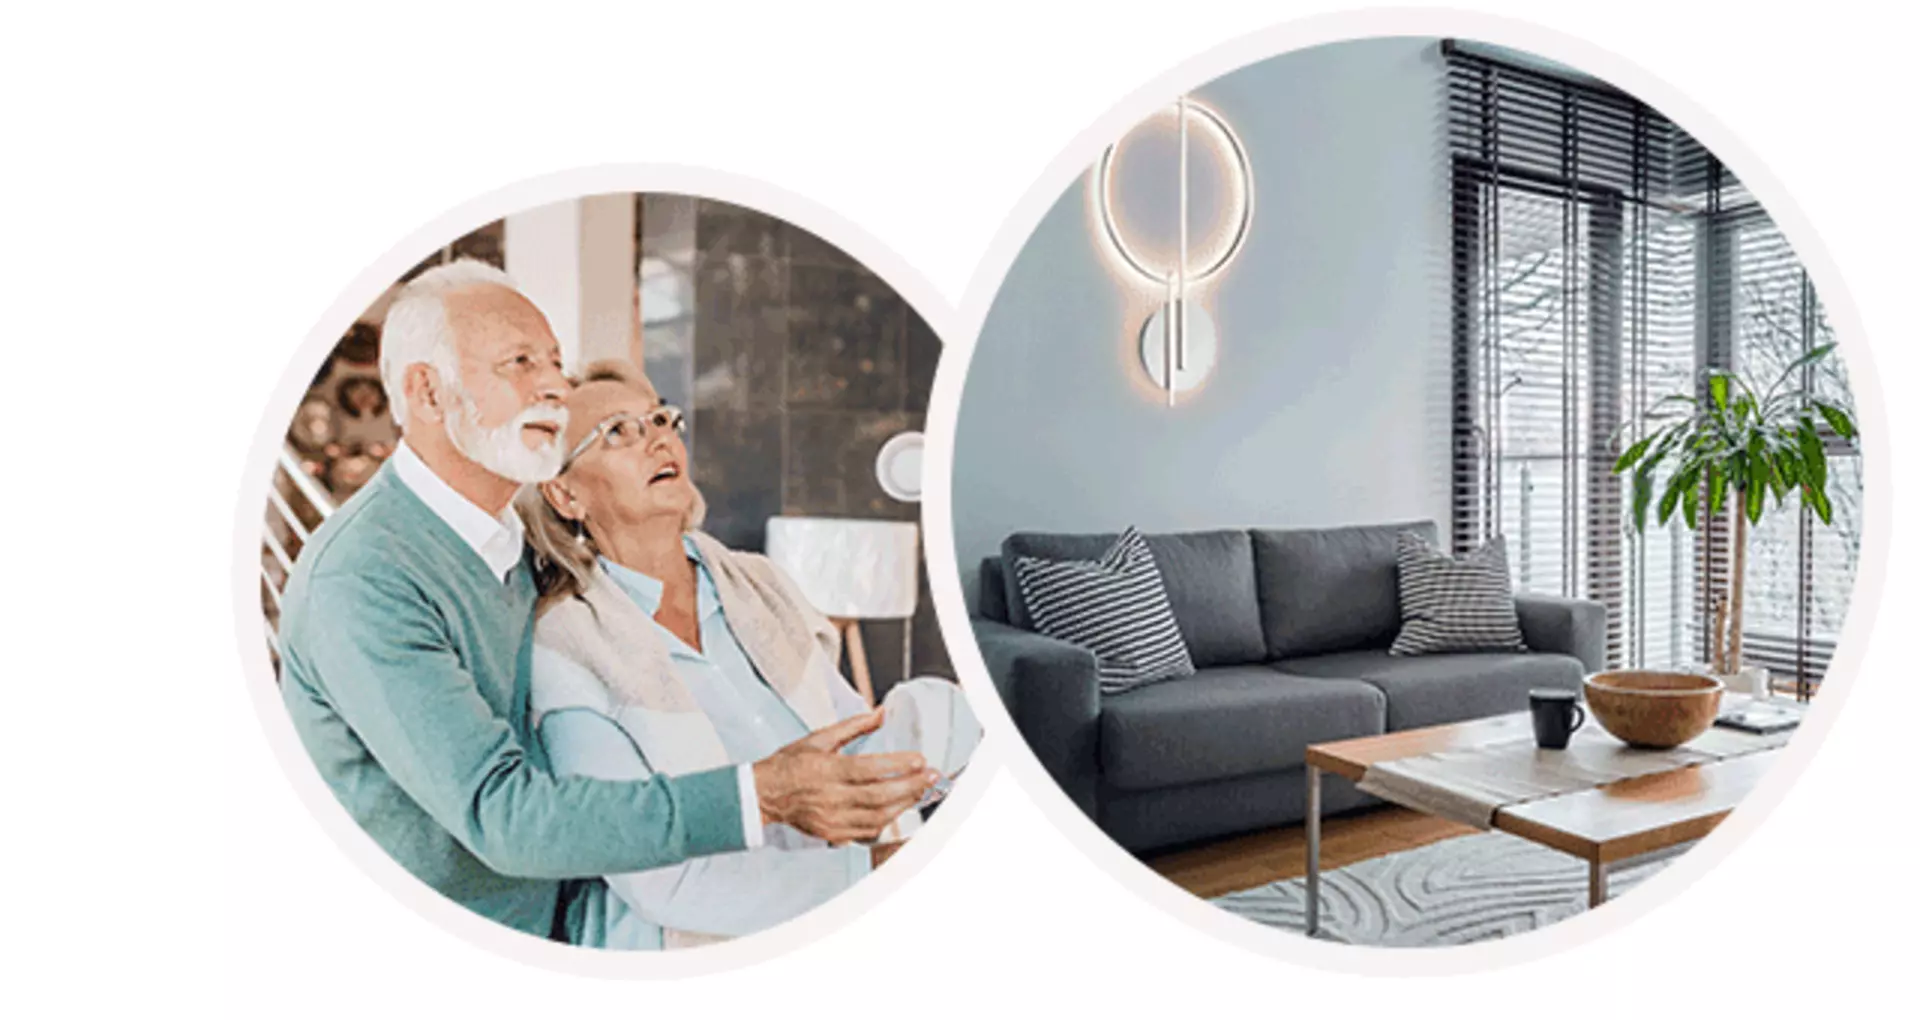 älteres ehepaar beim betrachen von leuchten und wohnzimmer mit dekorativer wandleuchte